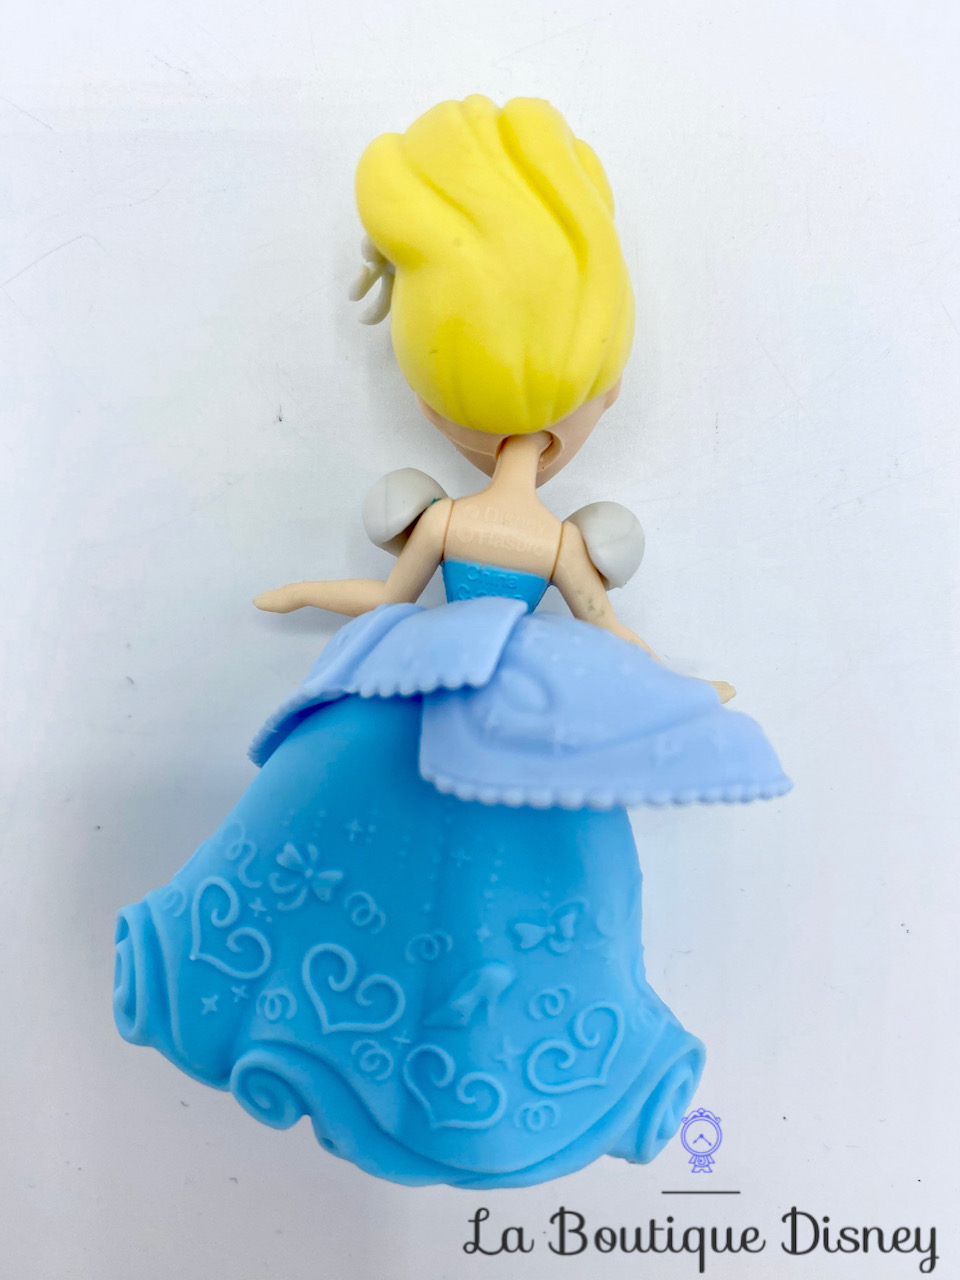 figurine-little-kingdom-cendrillon-disney-princess-hasbro-polly-clip-0